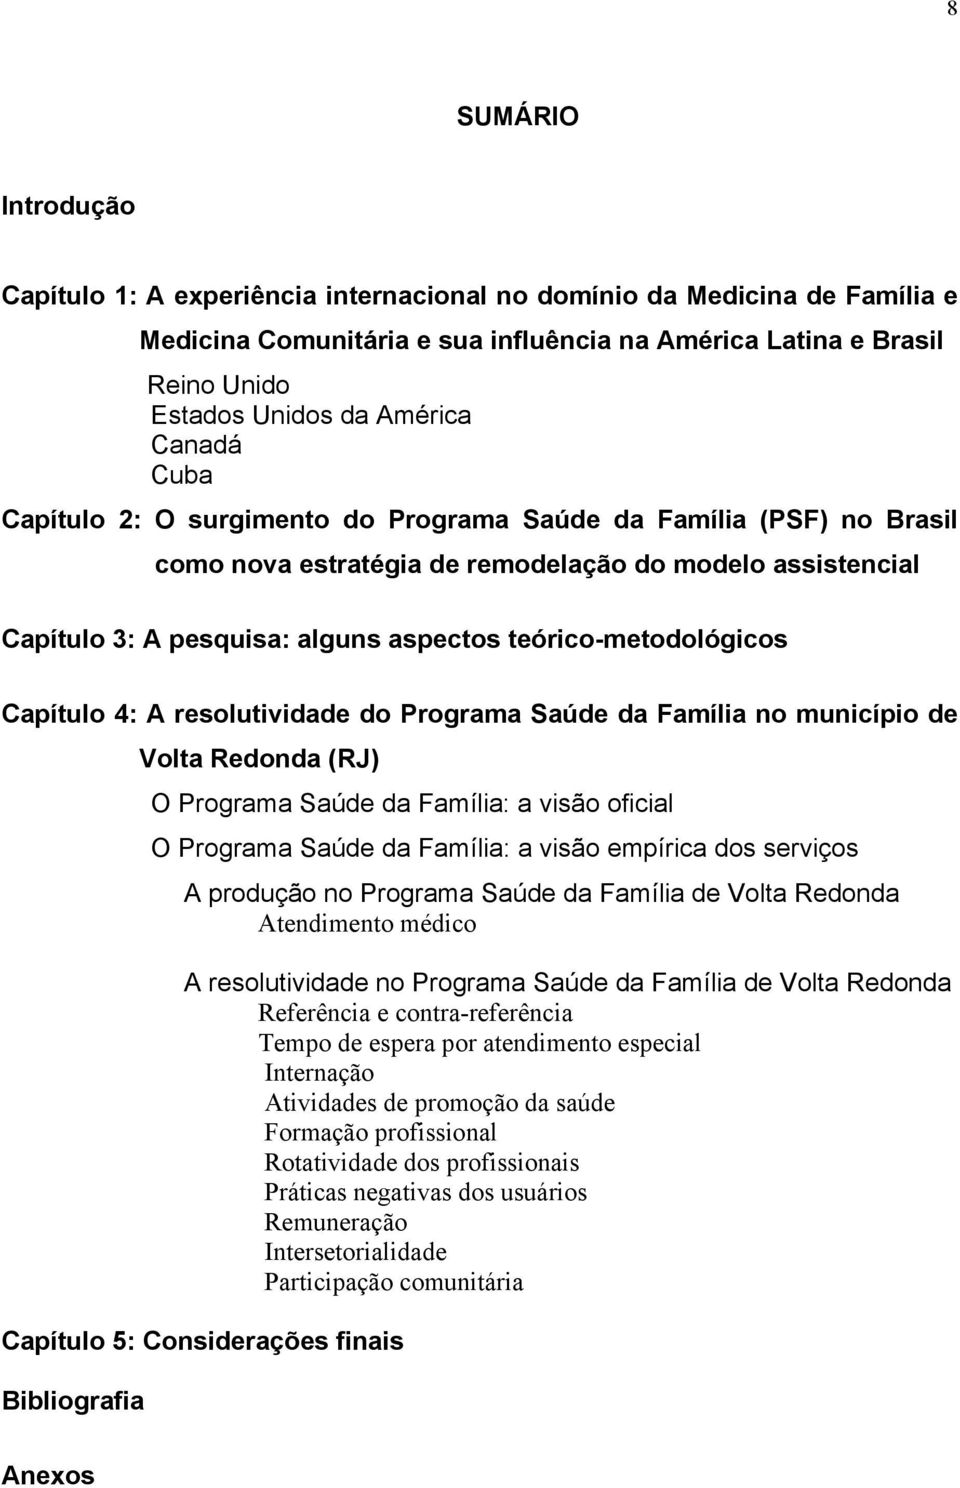 teórico-metodológicos Capítulo 4: A resolutividade do Programa Saúde da Família no município de Volta Redonda (RJ) O Programa Saúde da Família: a visão oficial O Programa Saúde da Família: a visão